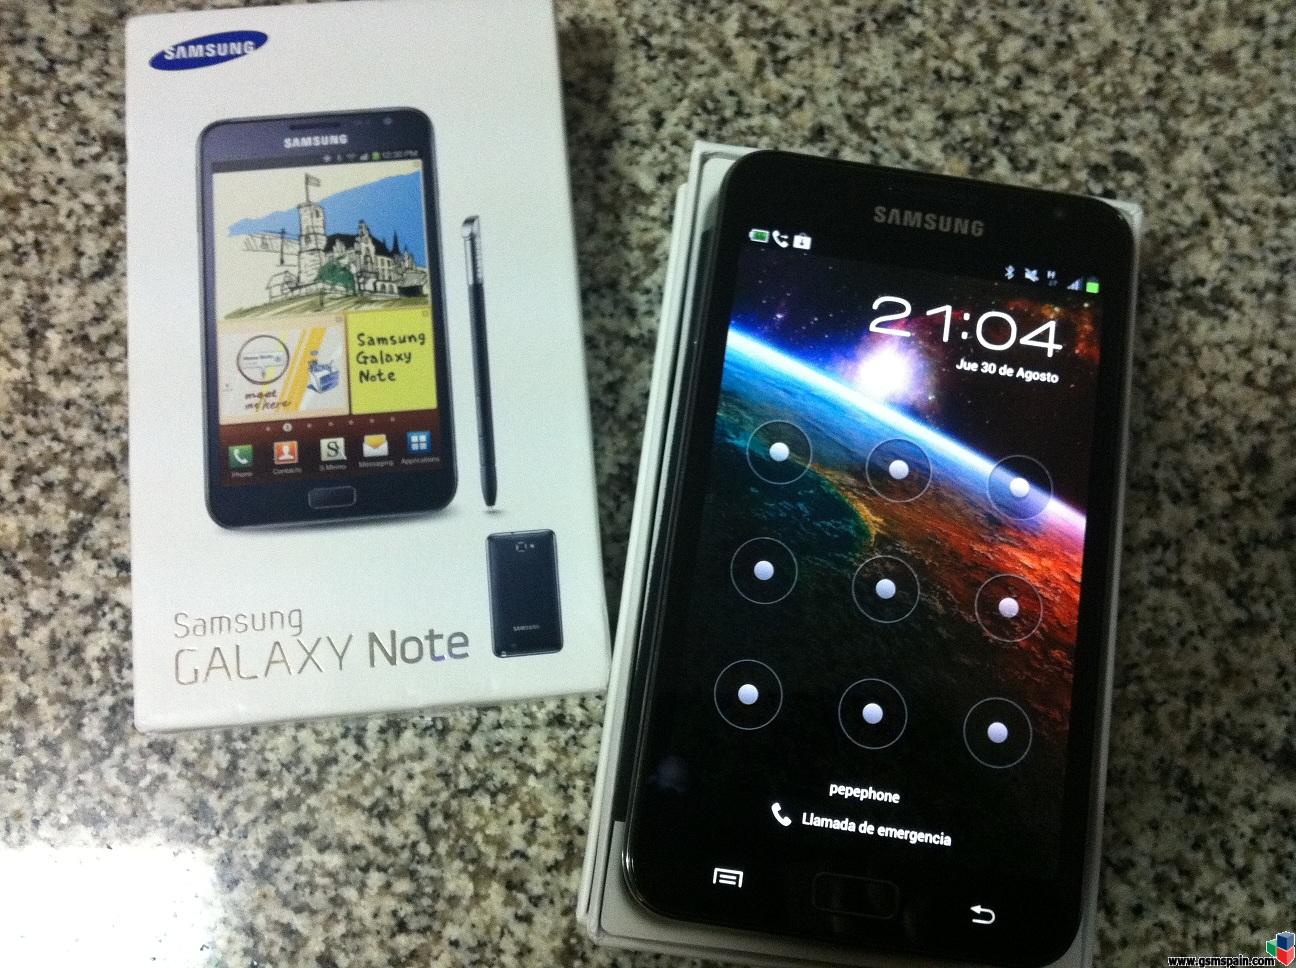 [VENDO] Samsung Galaxy NOTE Libre de origen, con factura + accesorios // 300 + Envo